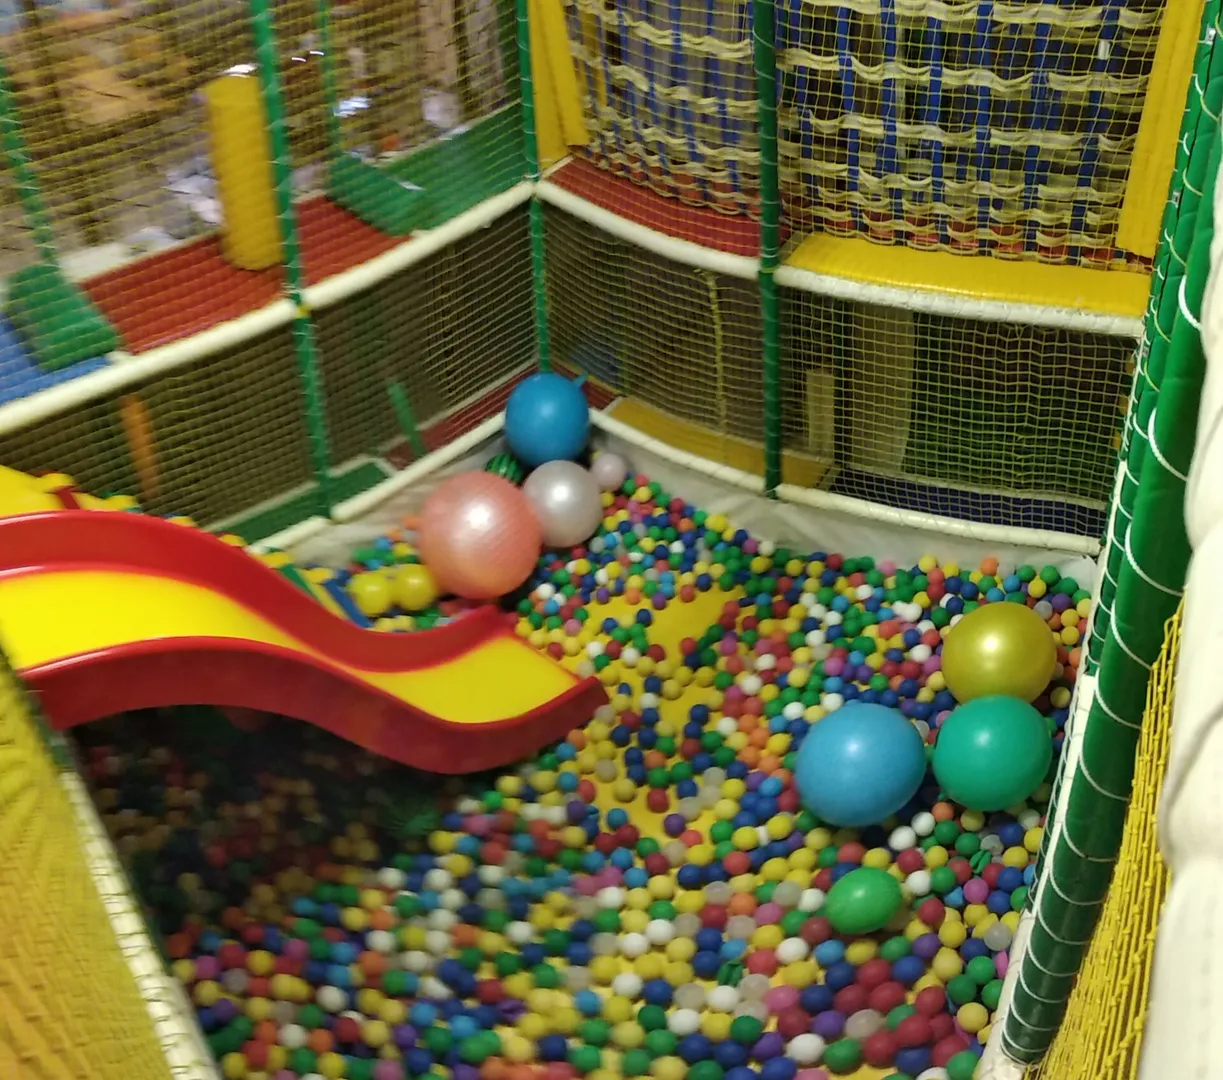 Детская игровая комната "лабиринт" для детей на територии